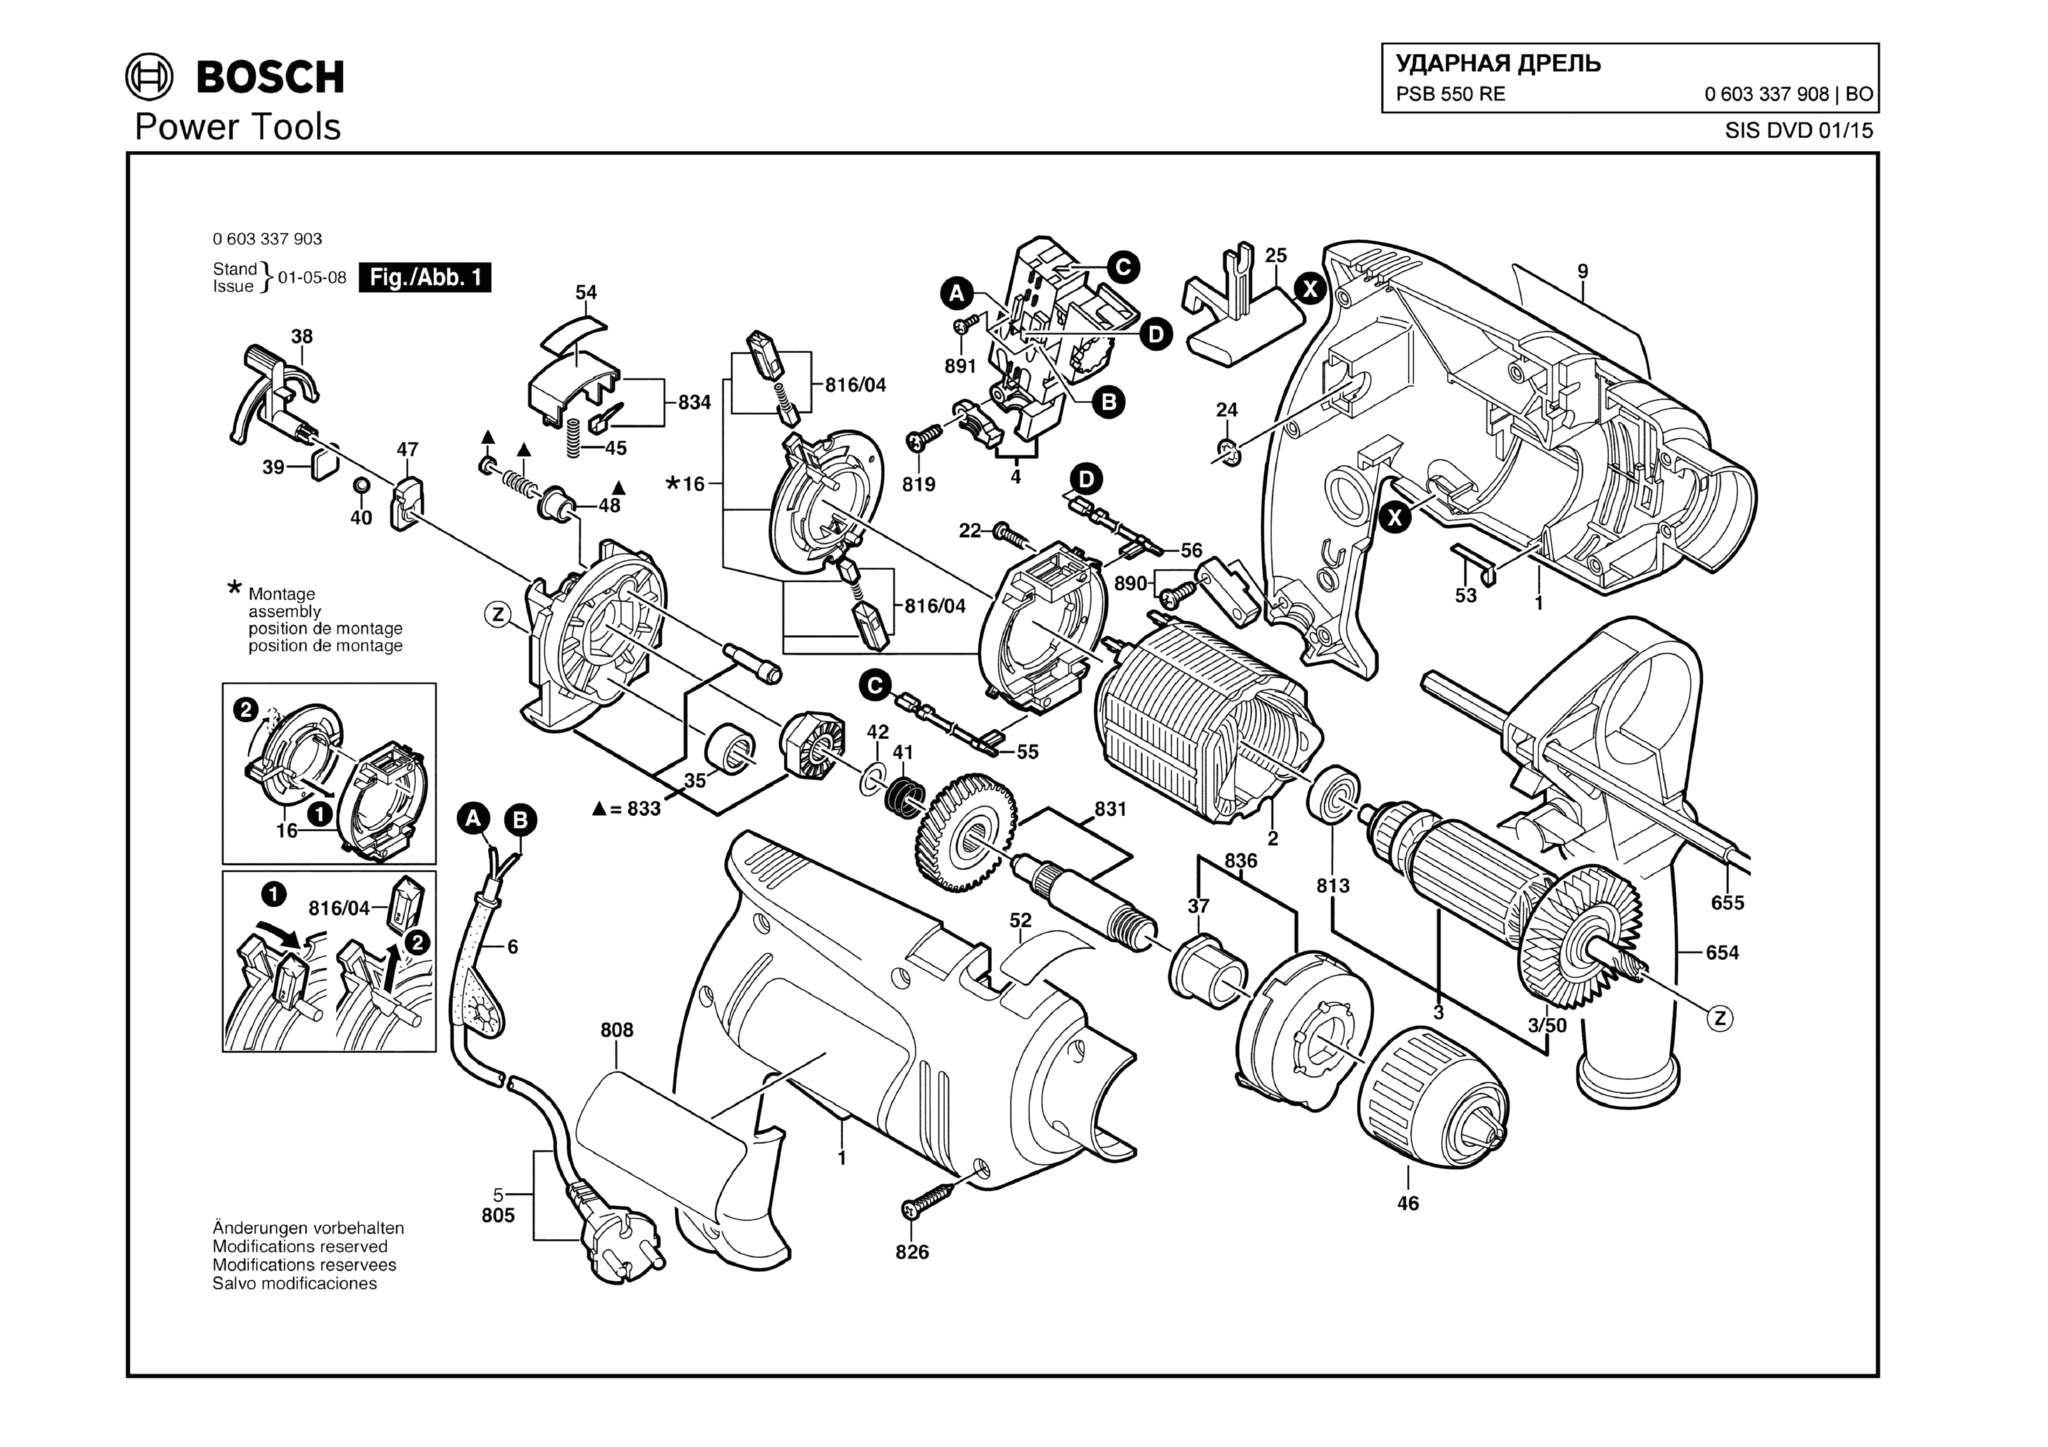 Запчасти, схема и деталировка Bosch PSB 550 RE (ТИП 0603337908)